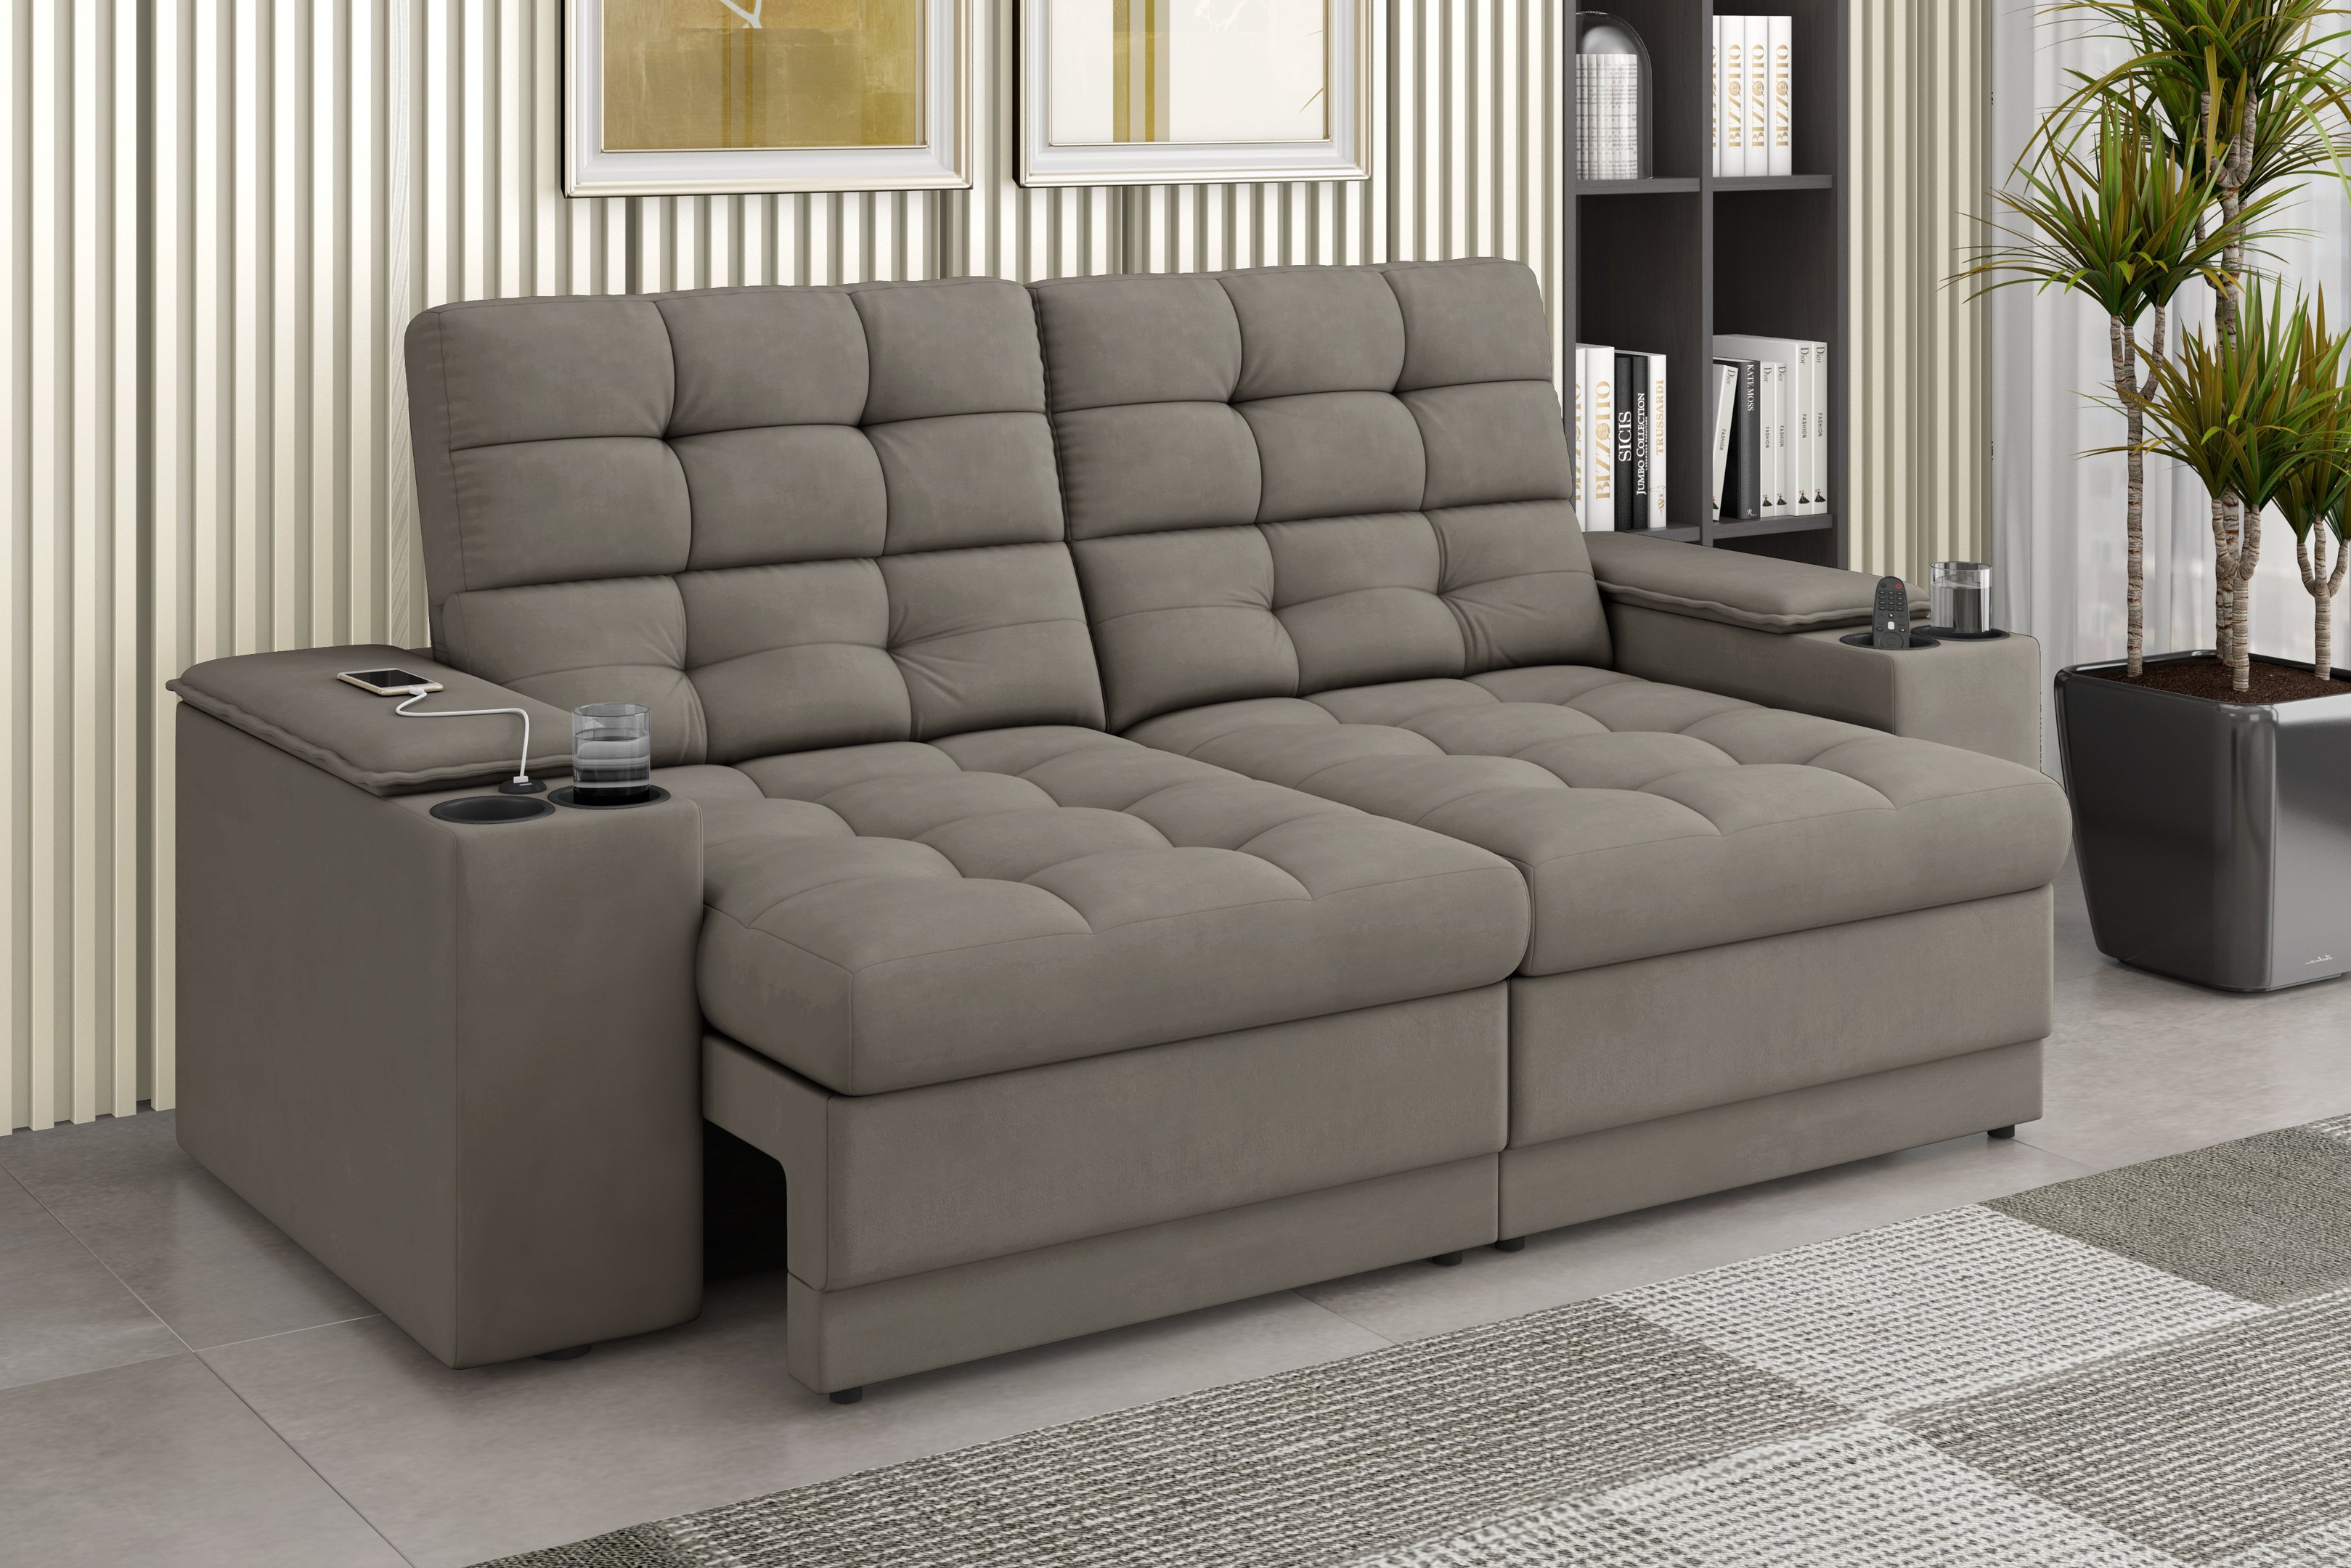 Sofá Confort Premium 1,70m Assento Retrátil/reclinável Porta Copos e Usb Suede Capuccino - Xflex - 1